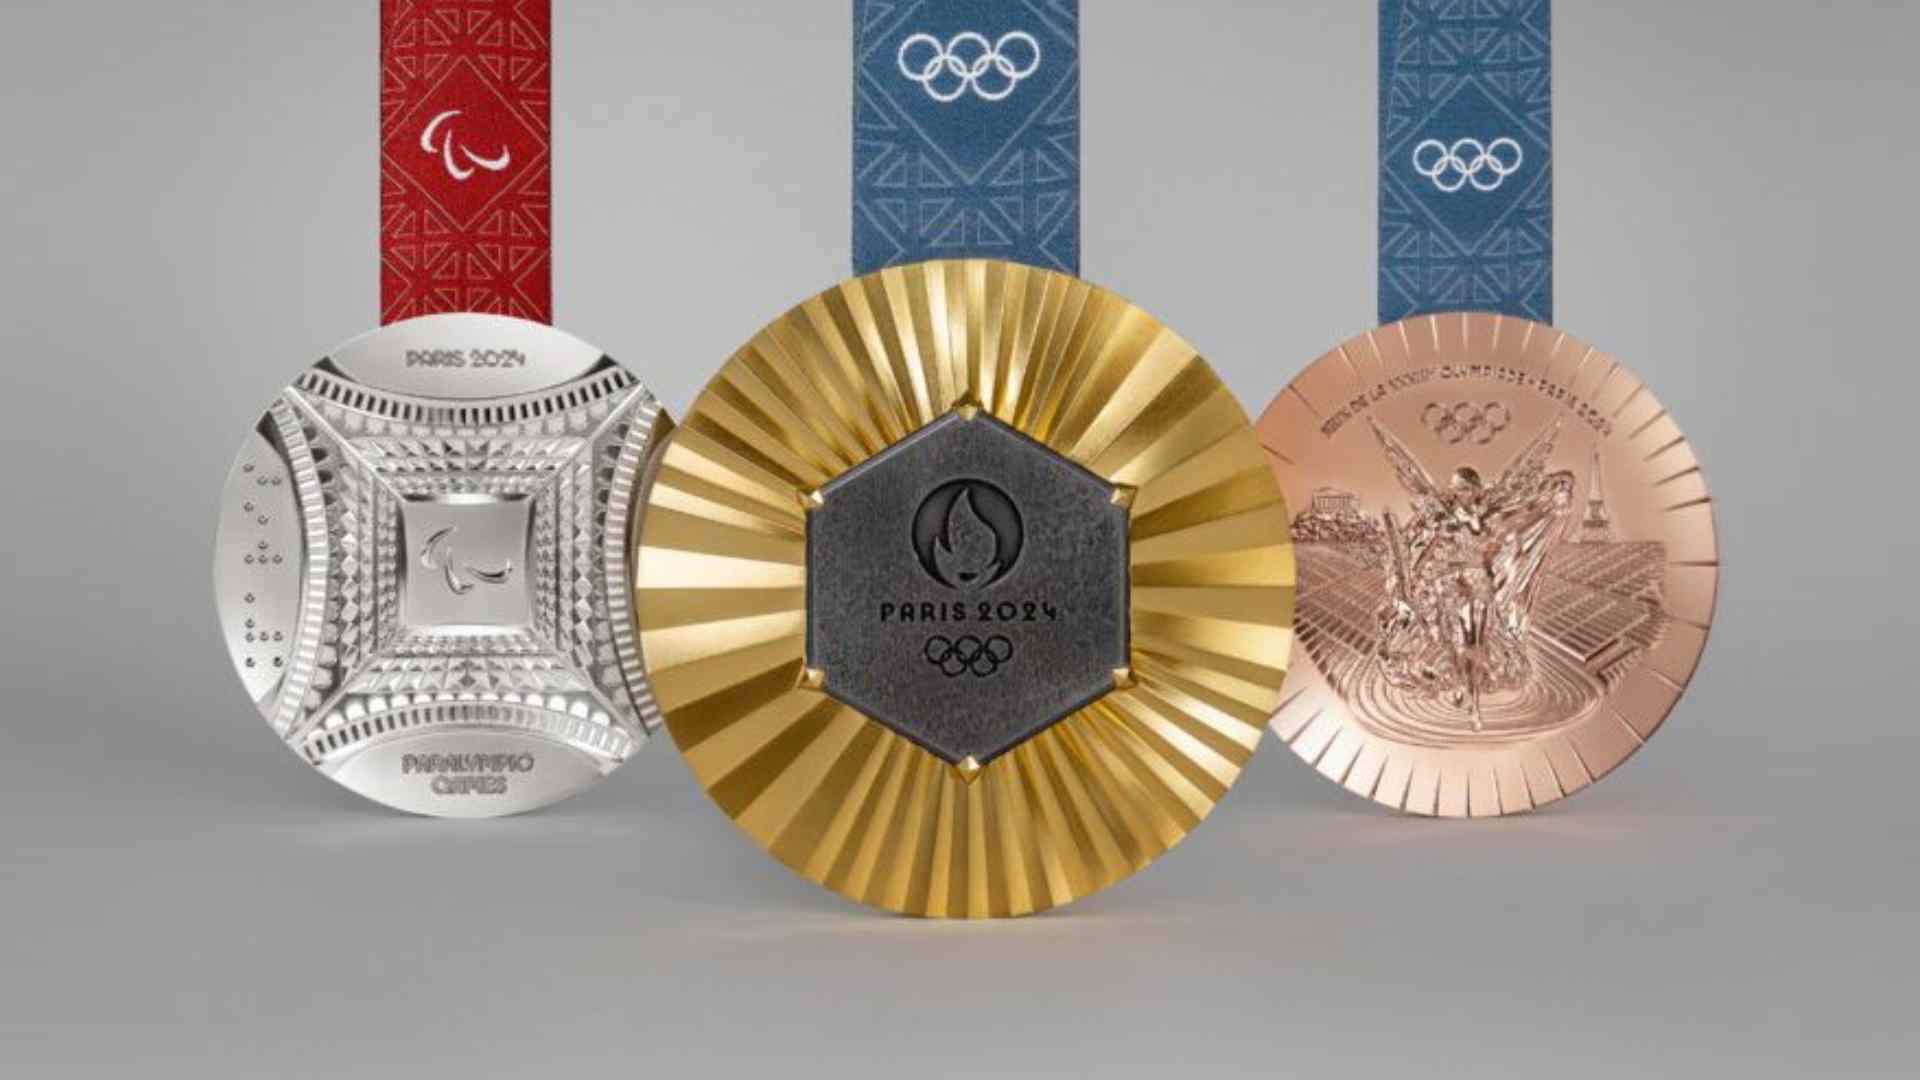 Les medalles dels Jocs de París 2024: una simbiosi única entre l'esport i la història francesa